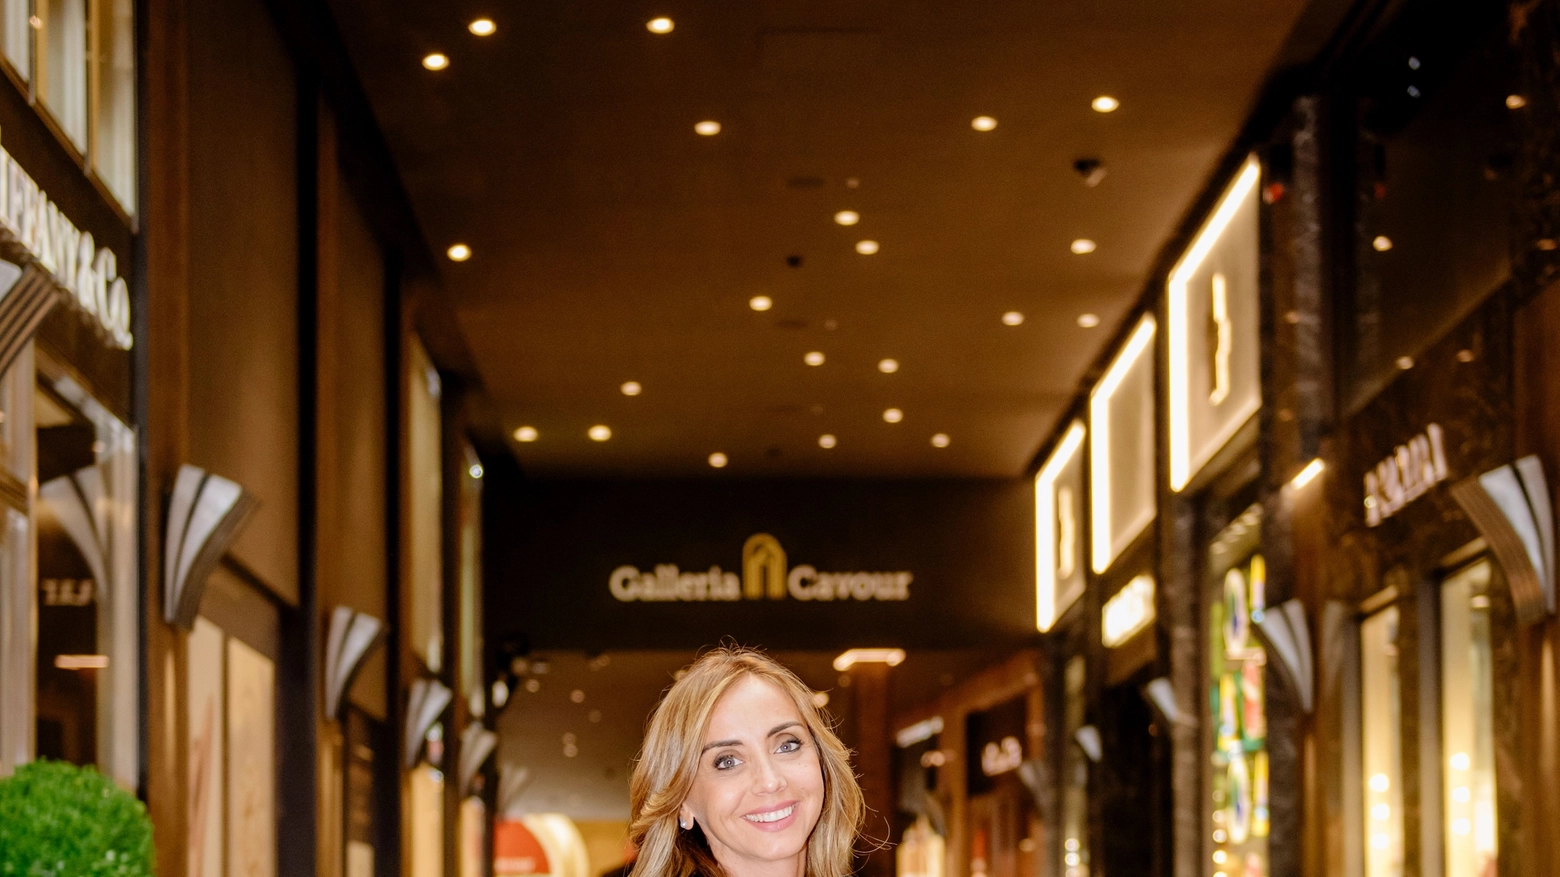 Gioia Martini, nuova proprietaria della parte storica di Galleria Cavour